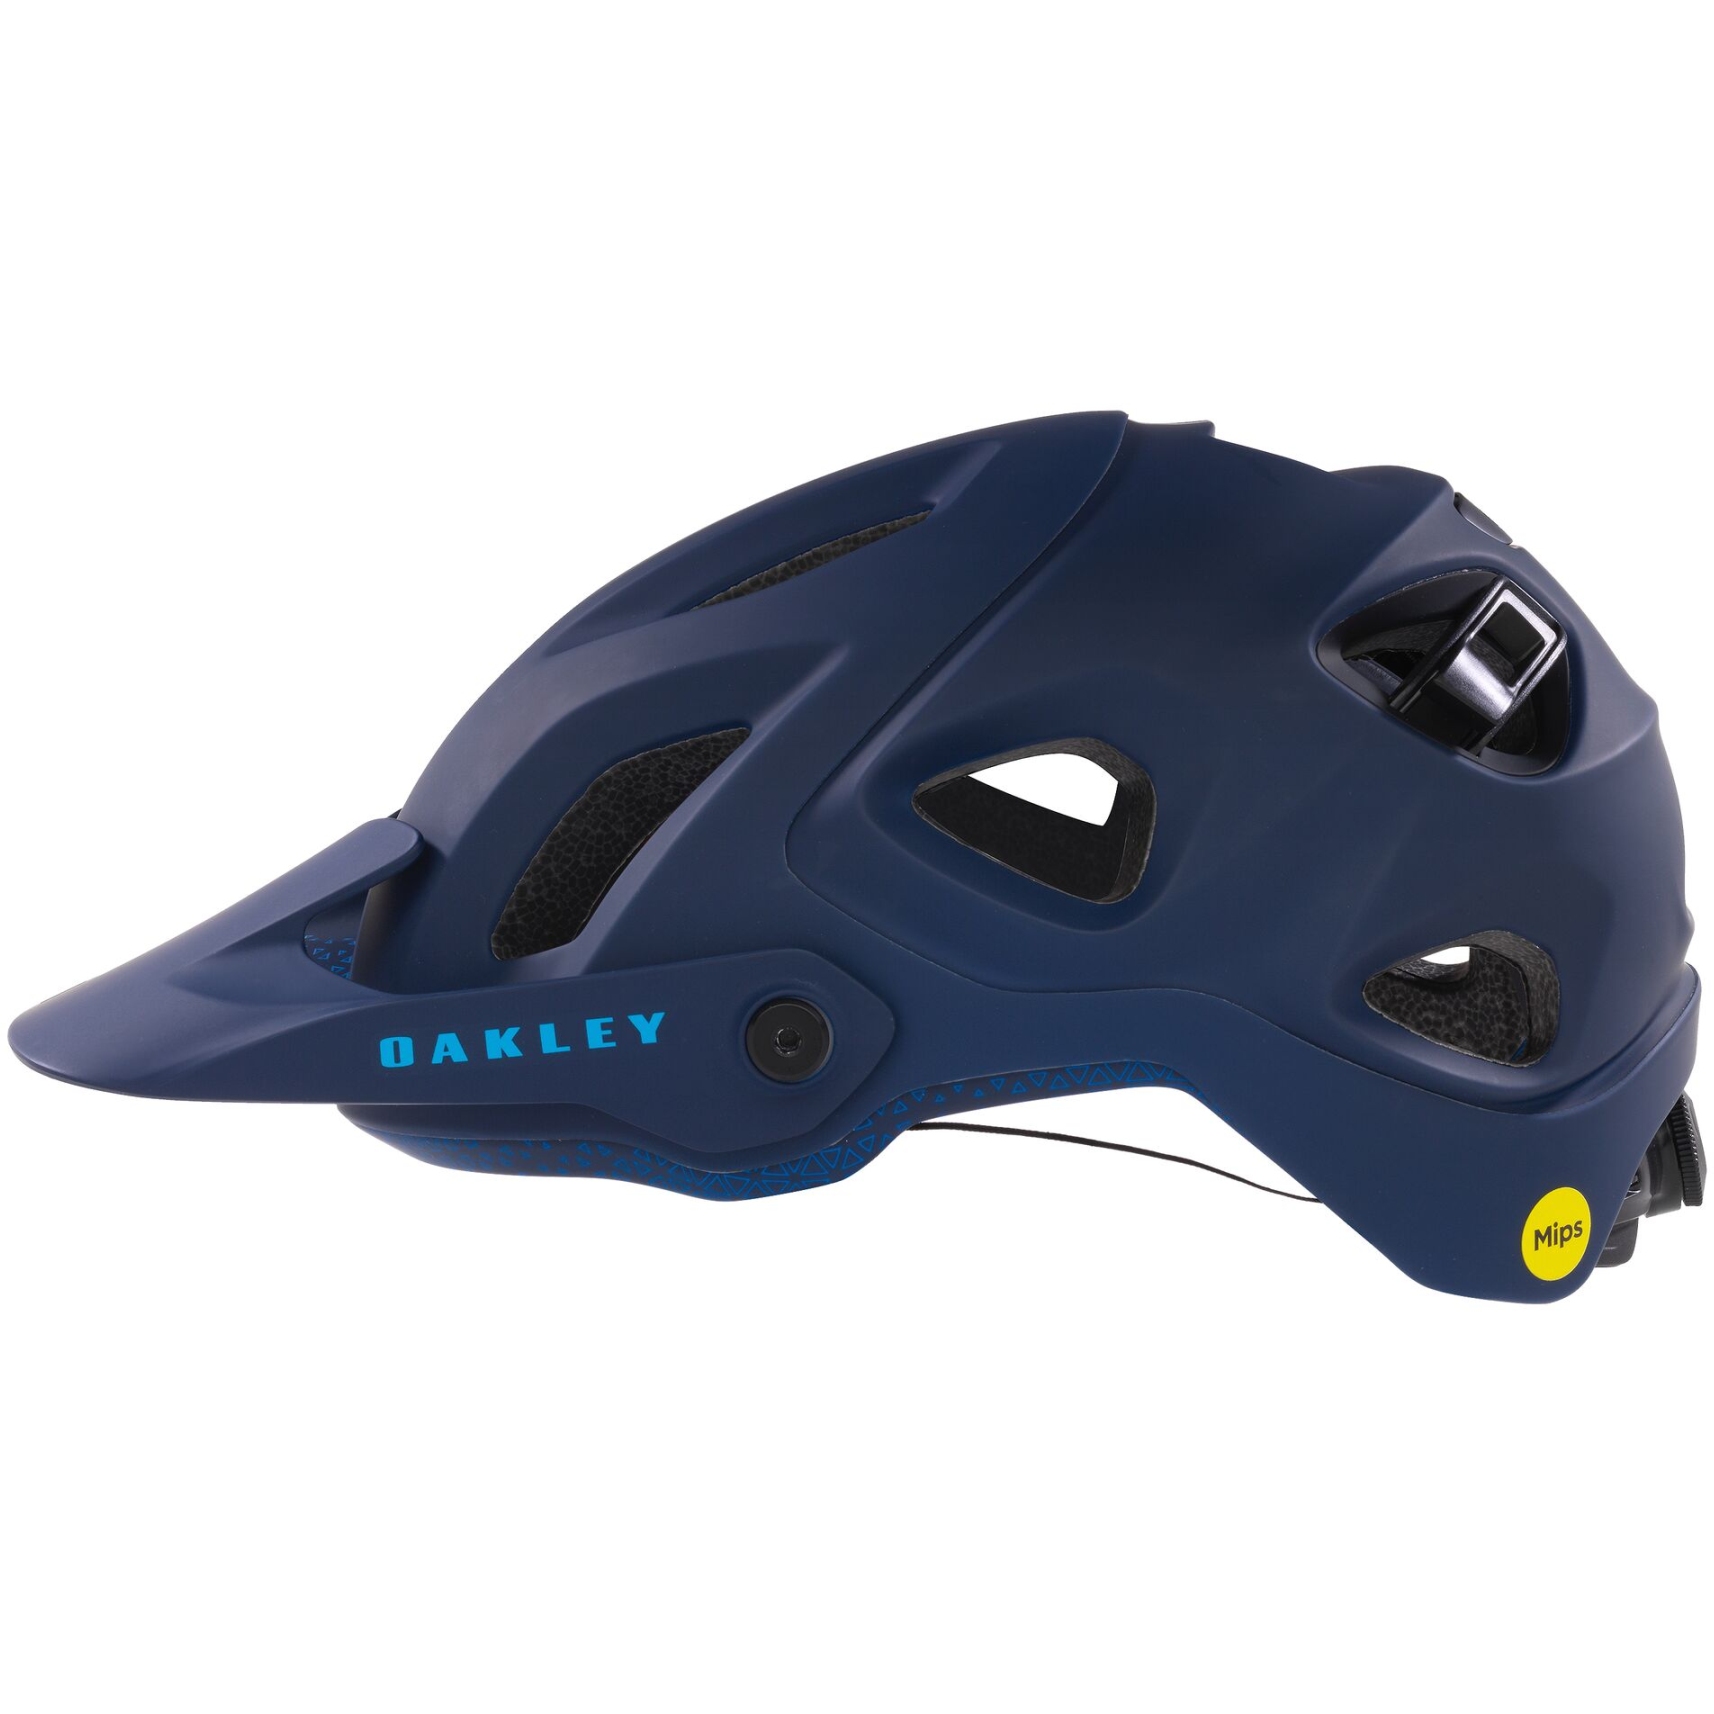 Produktbild von Oakley DRT5 Helm - navy/primaryblue/skyblue